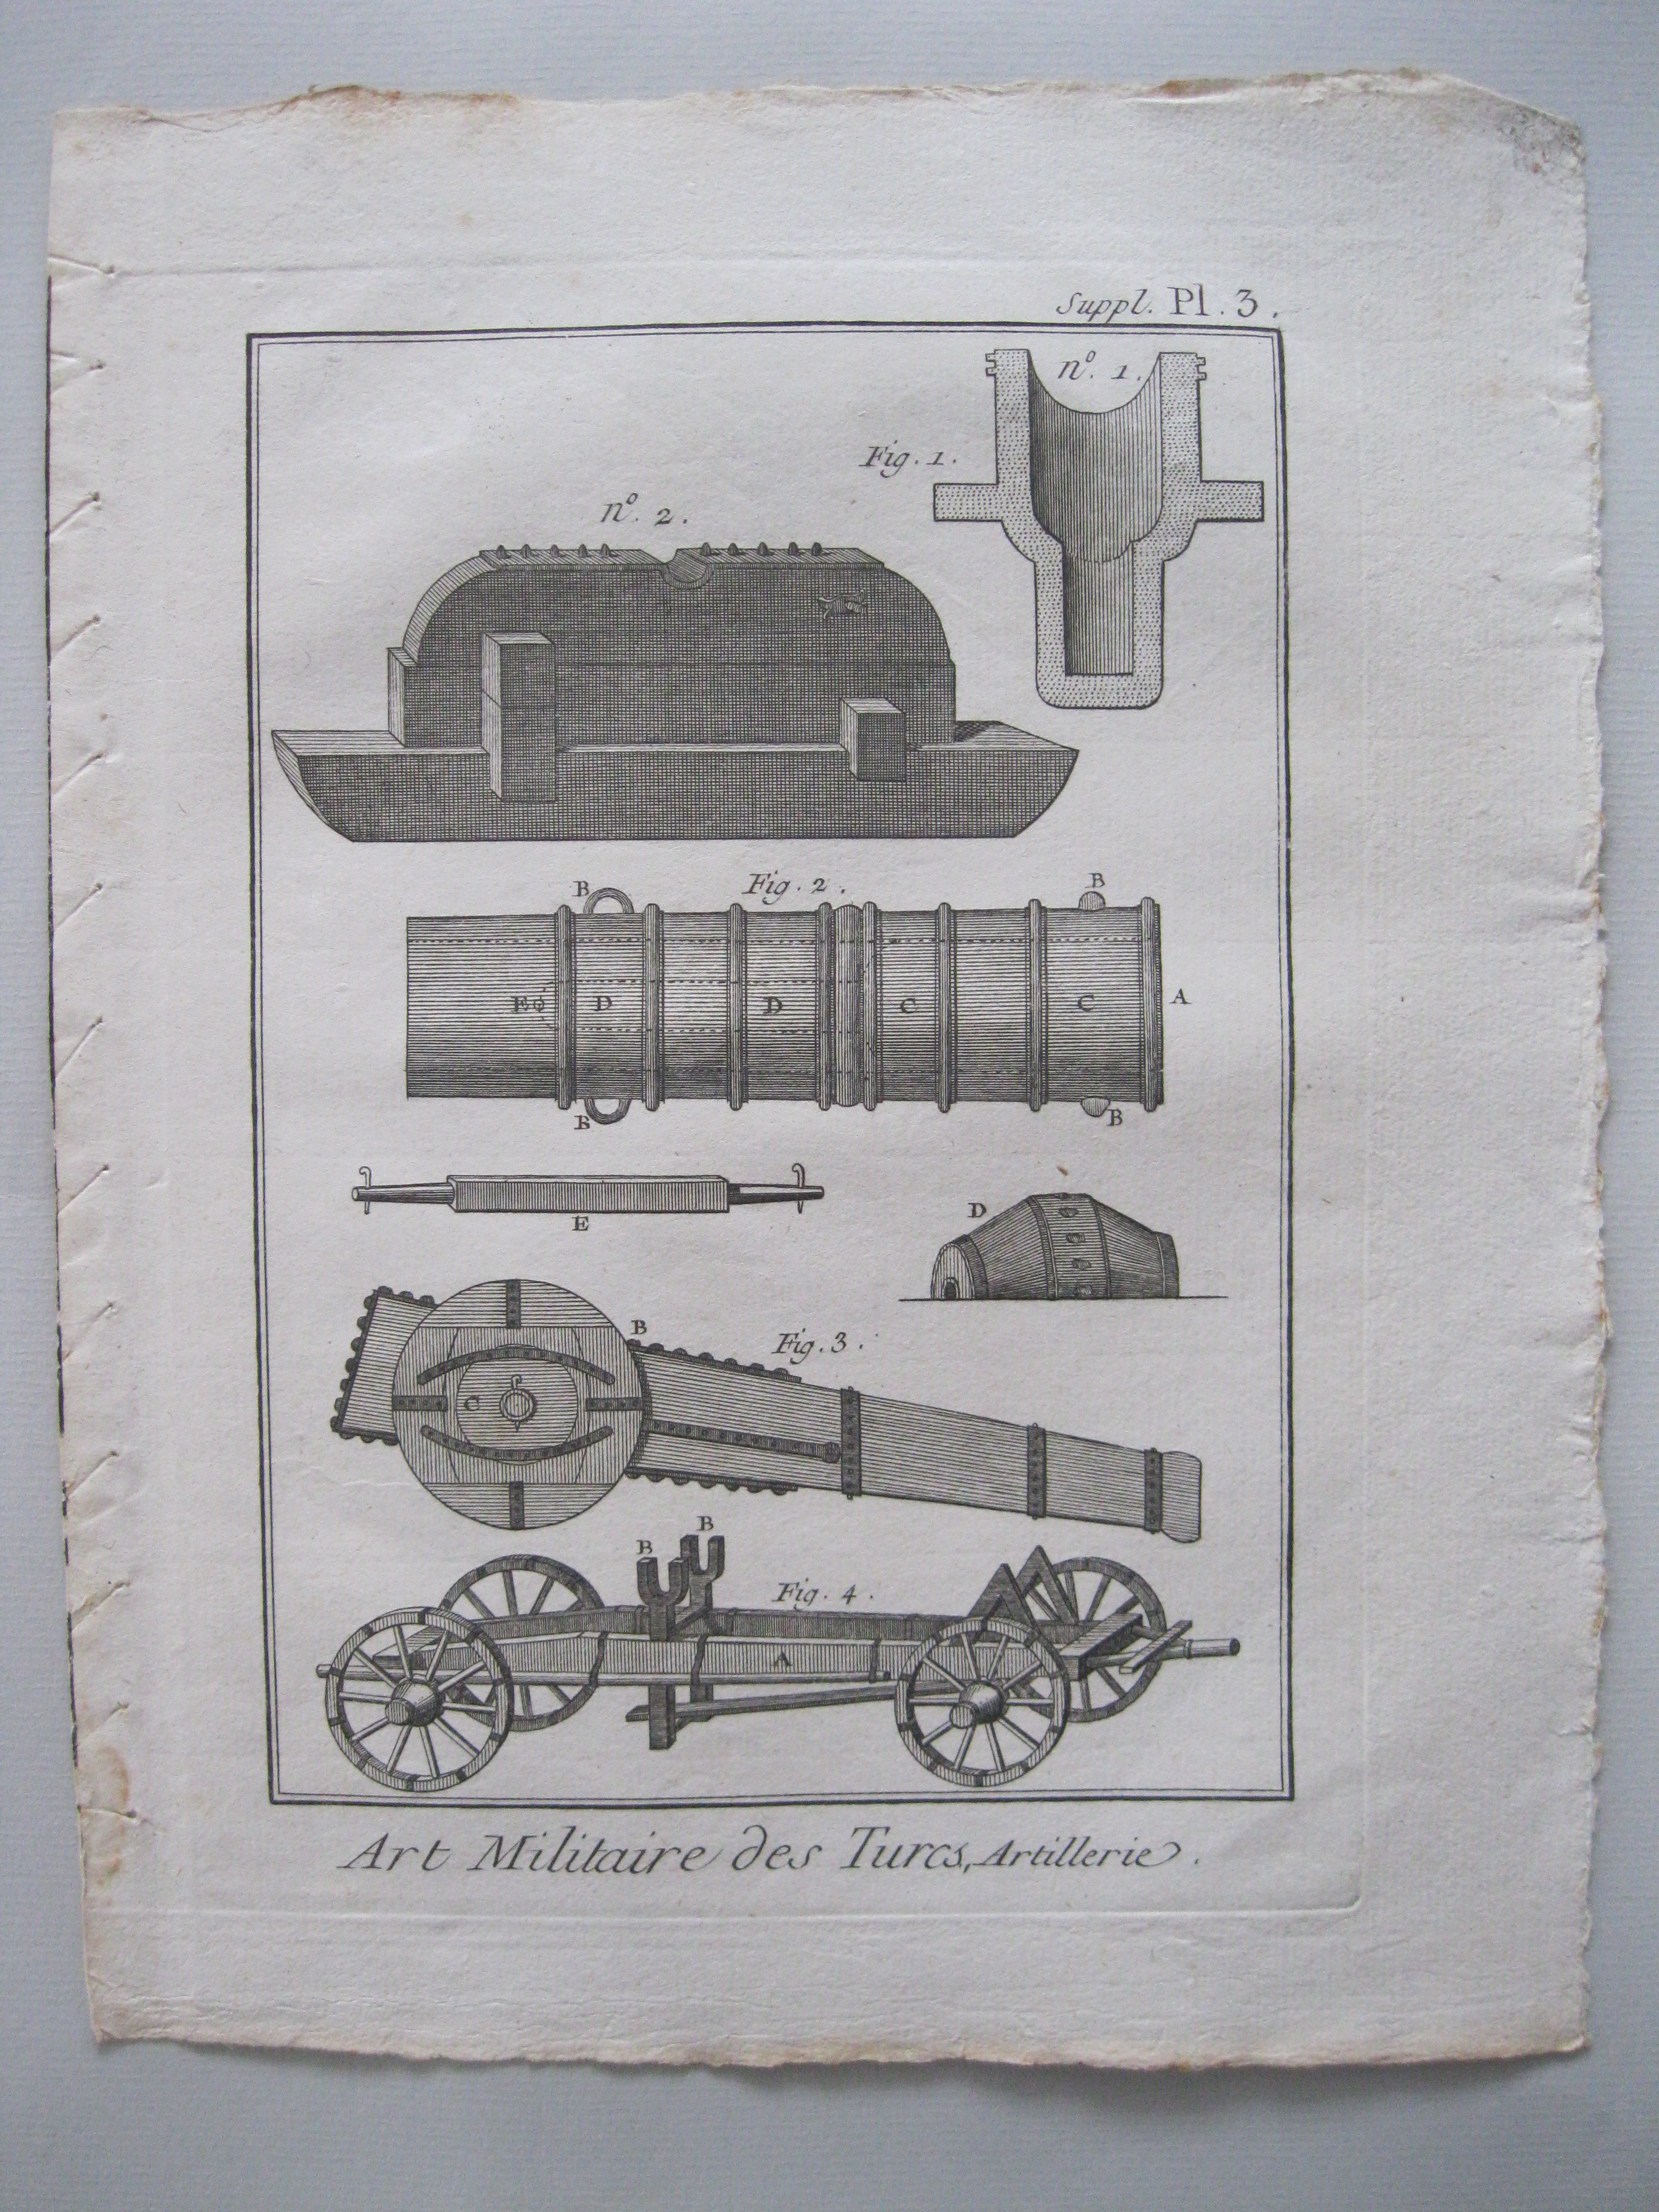 Arte militar. Artillería de los turcos.Diderot et D'Alembert, 1779